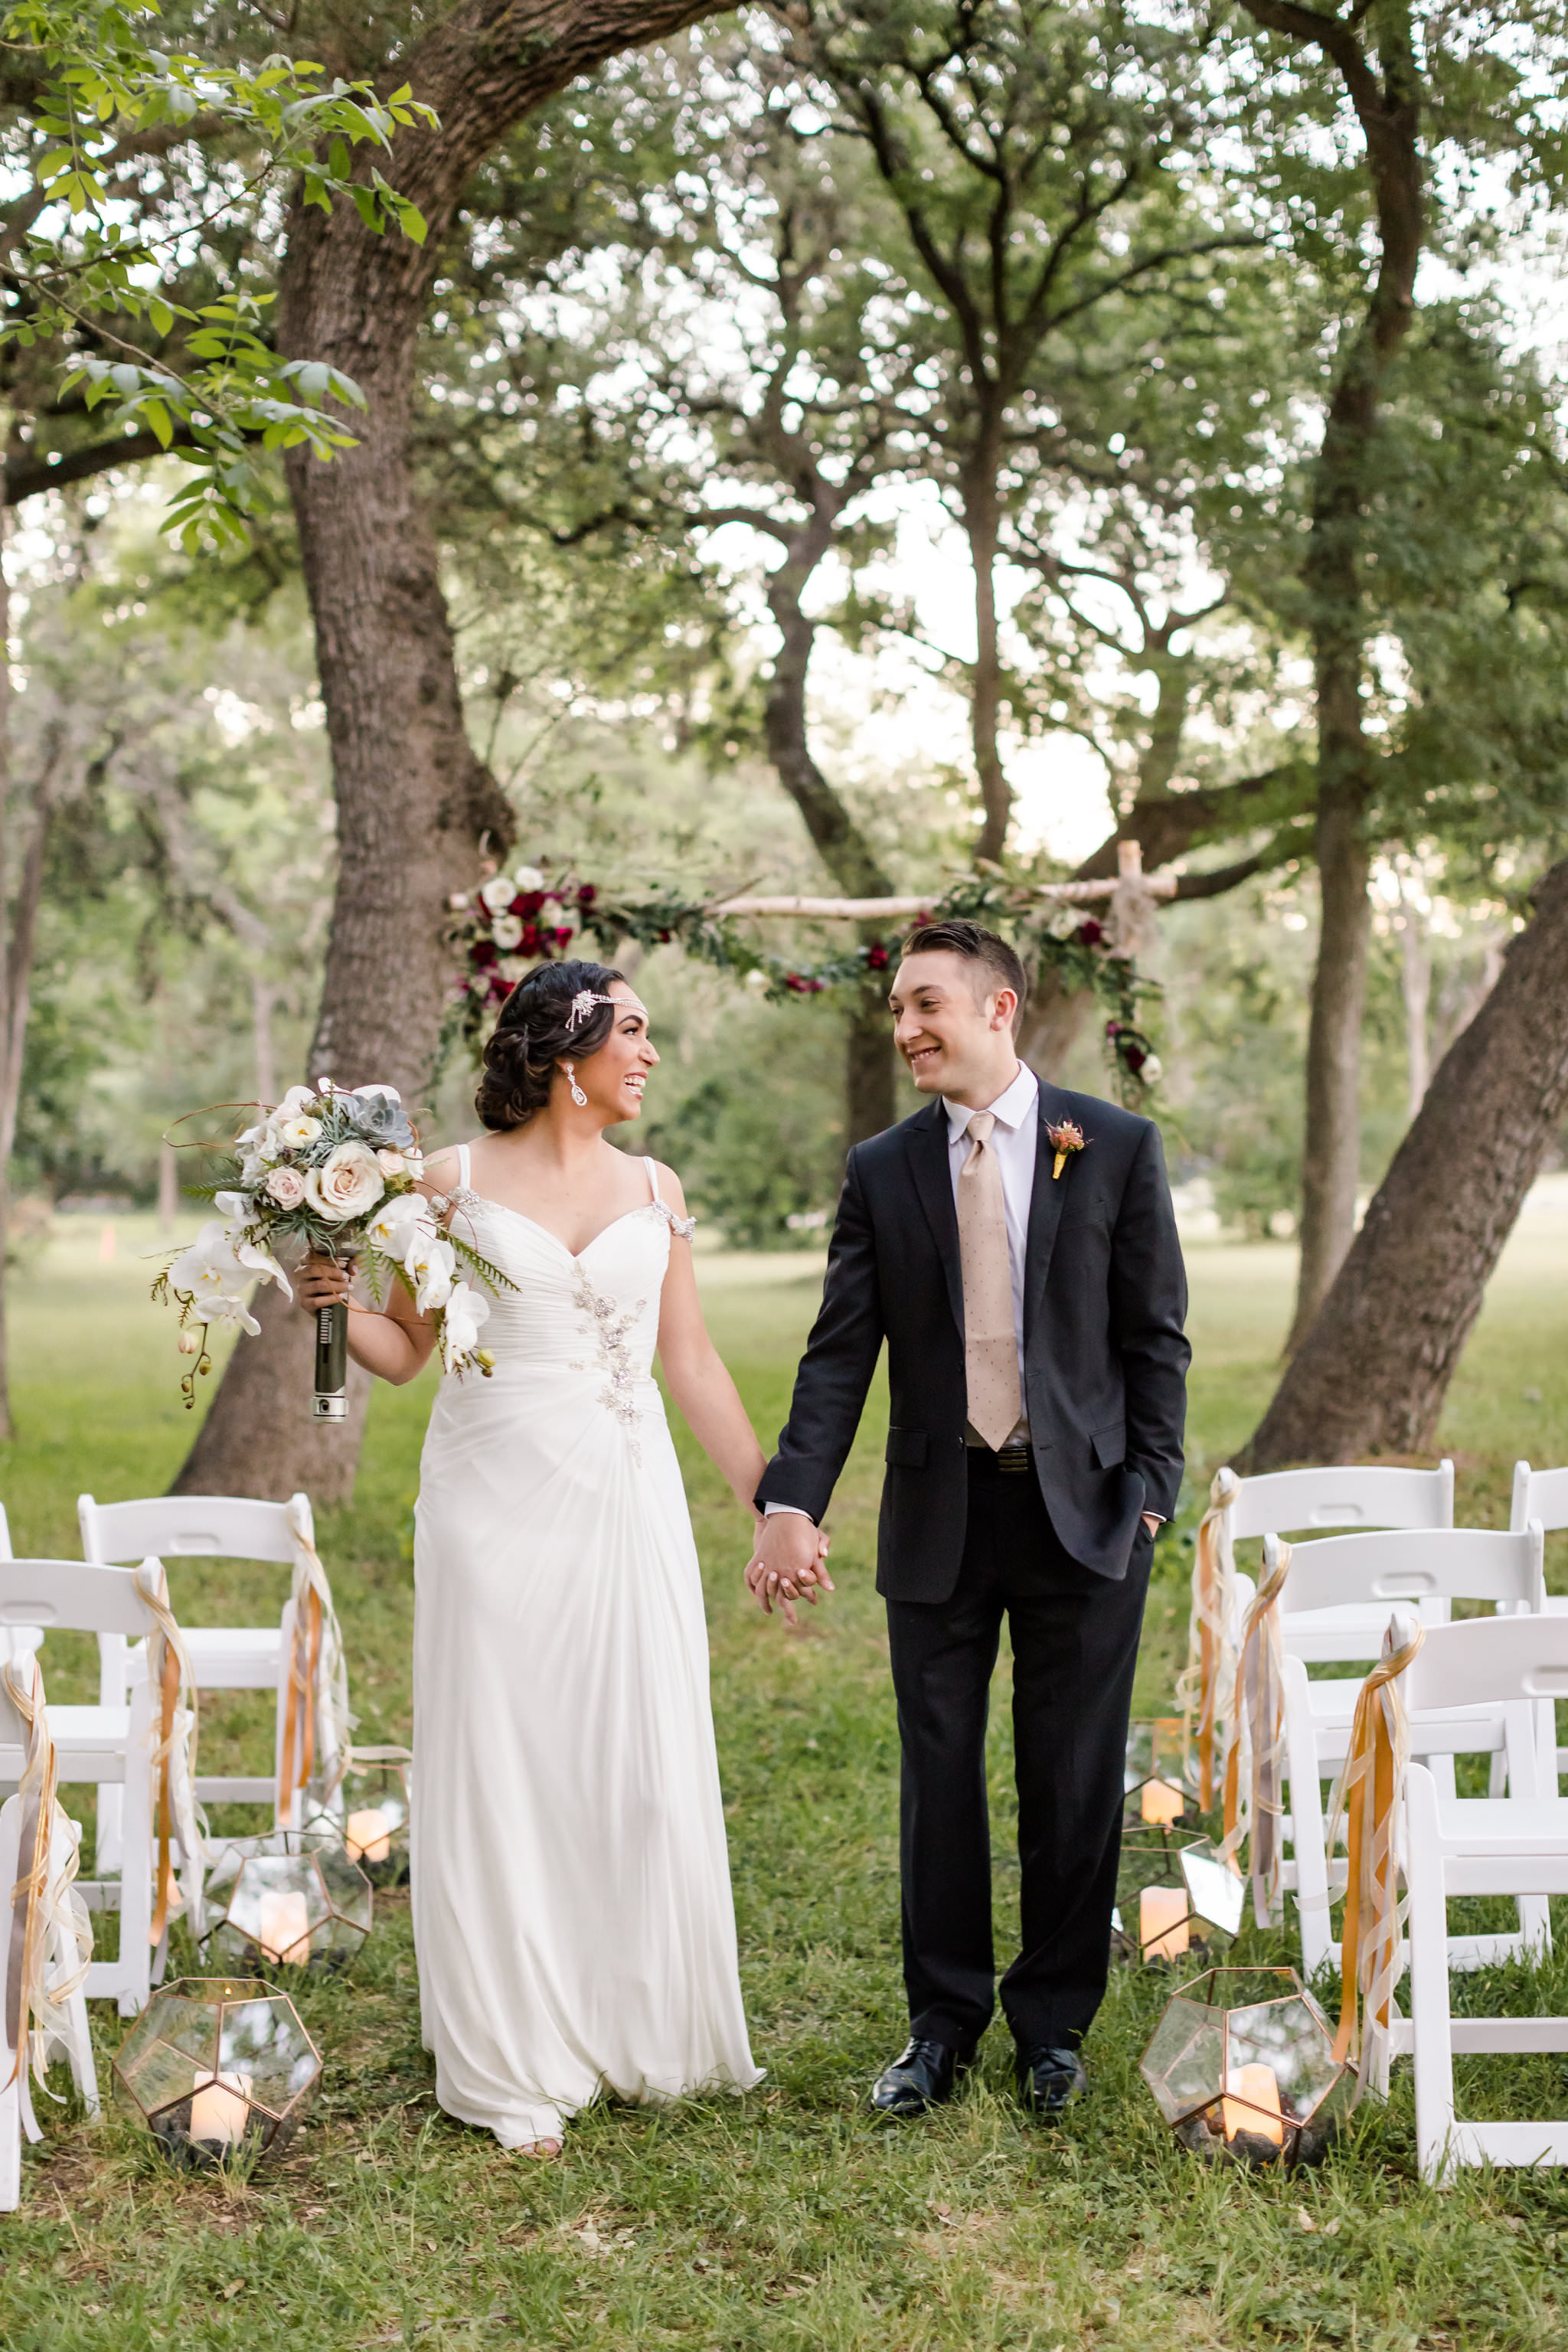 A Star Wars Inspired Wedding by Dawn Elizabeth Studios, San Antonio Wedding Photographer